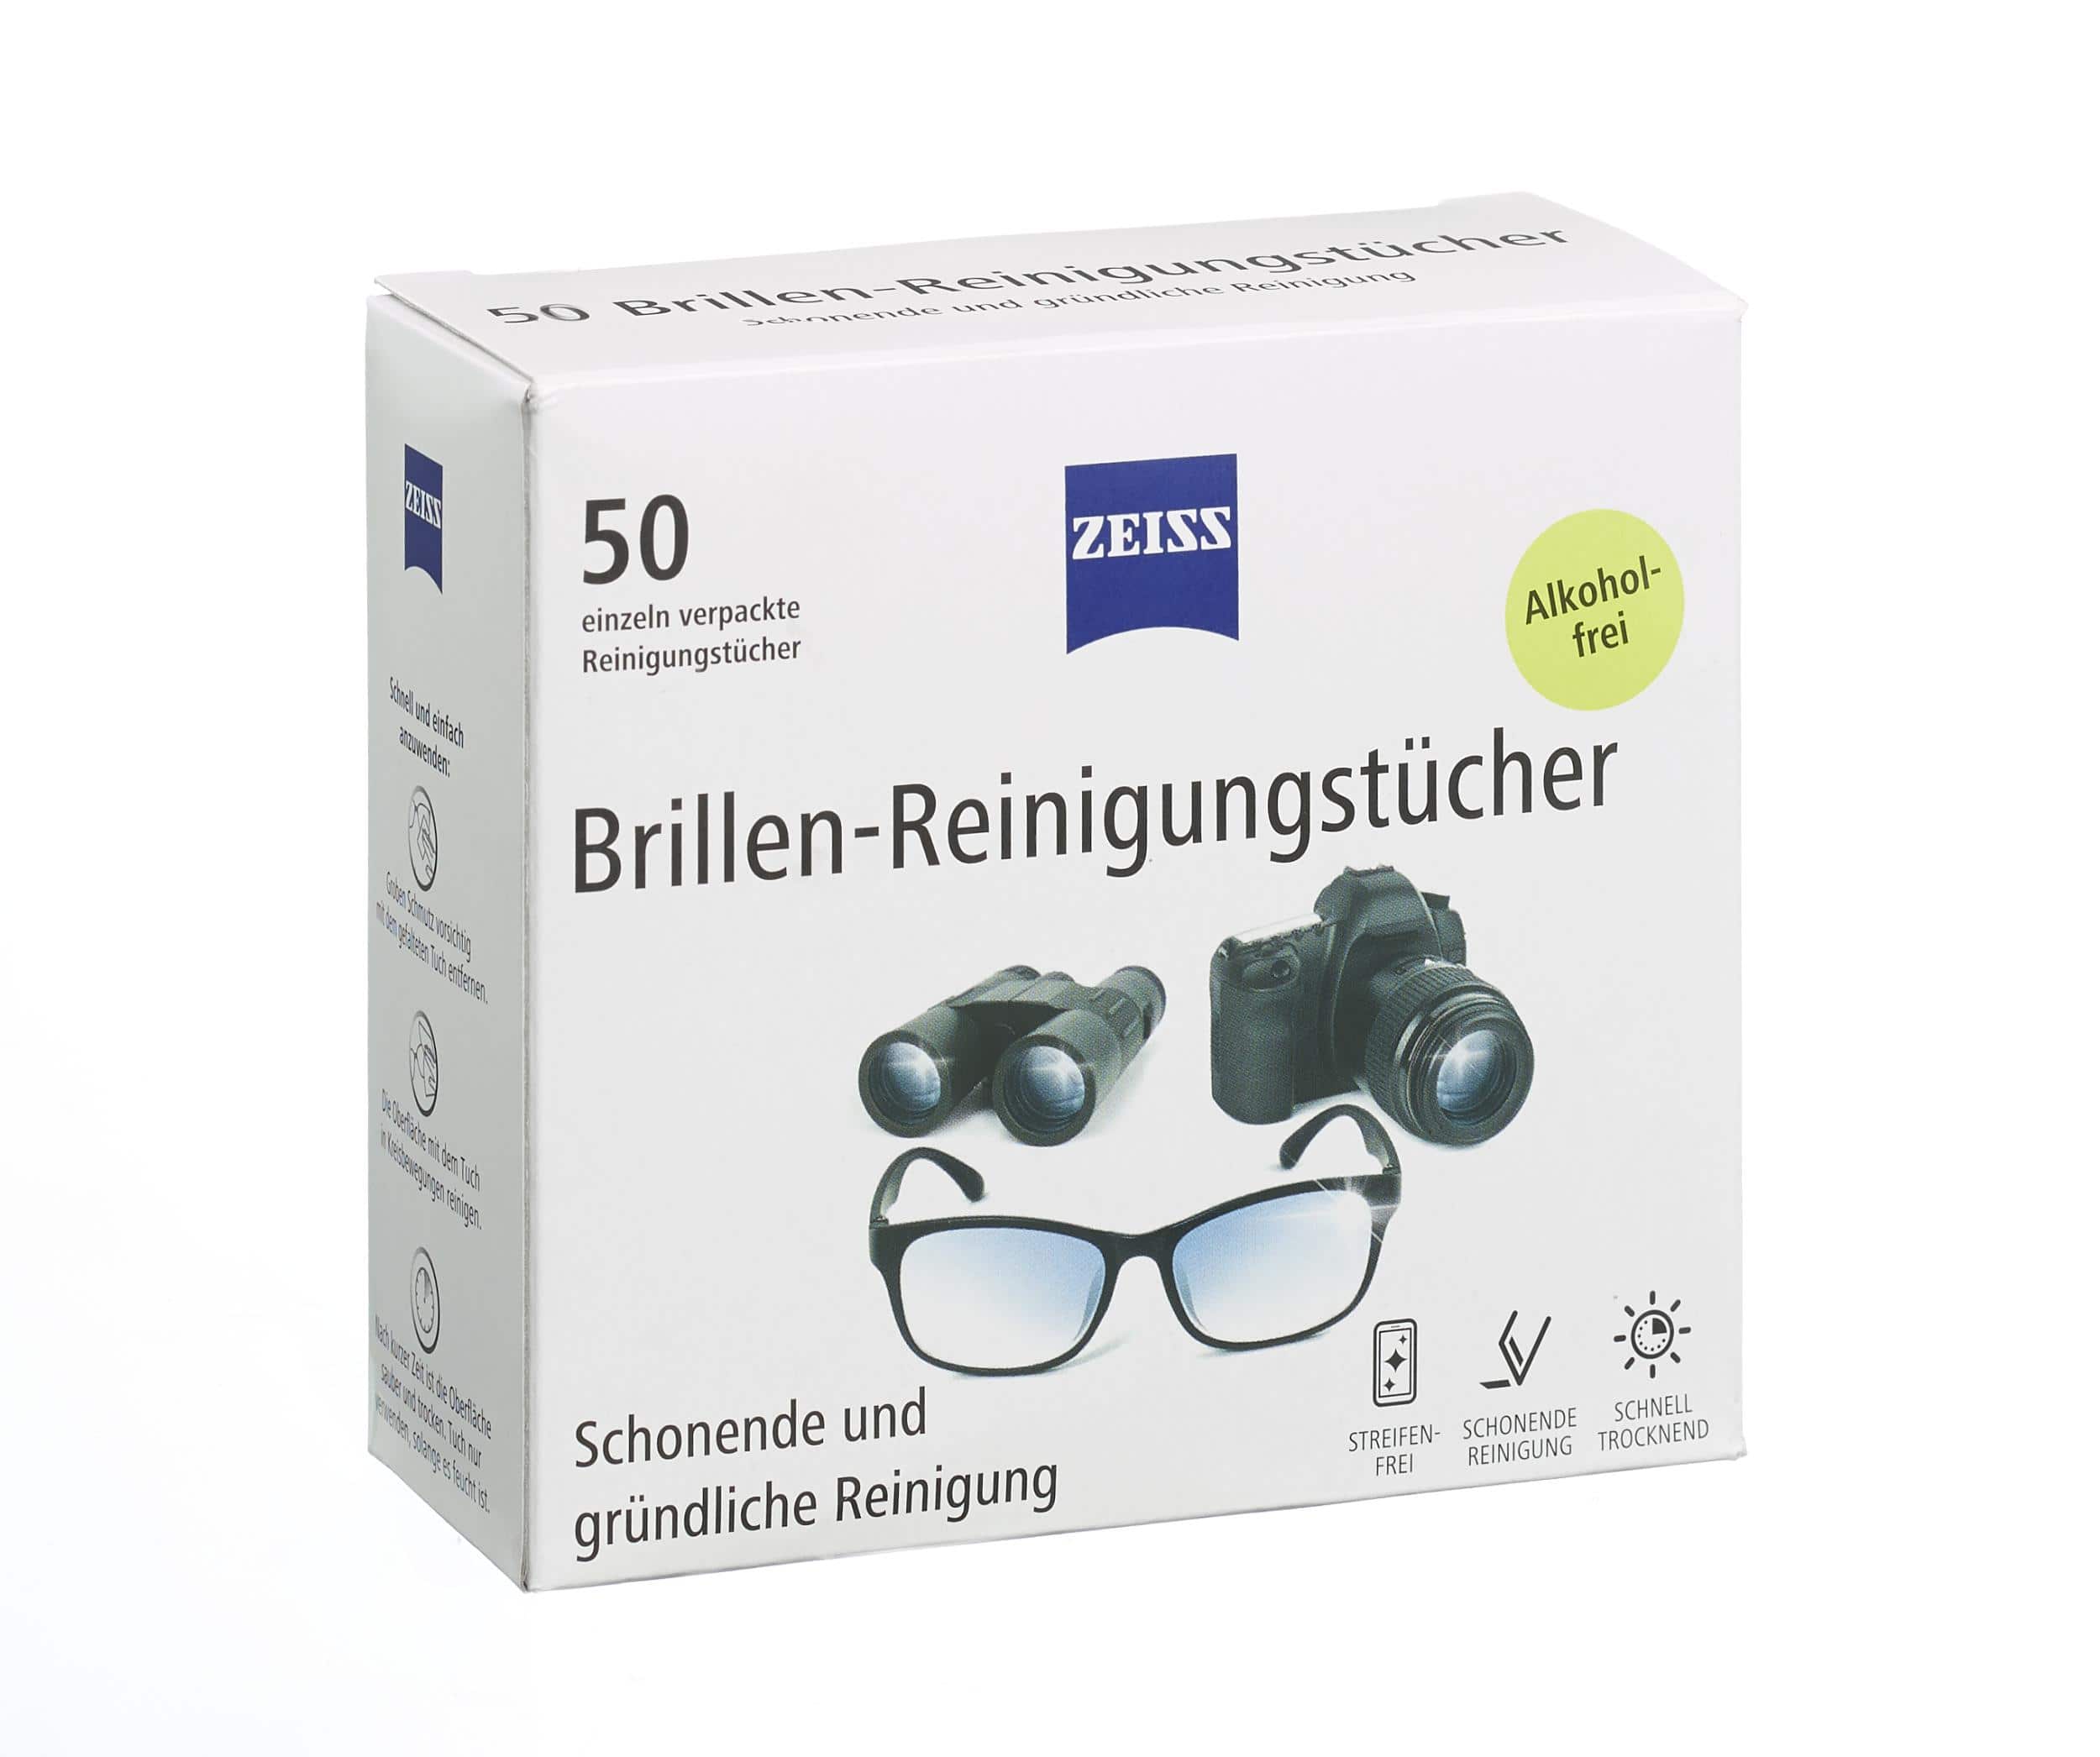 Zeiss Brillenreinigungstücher, 50 Stück